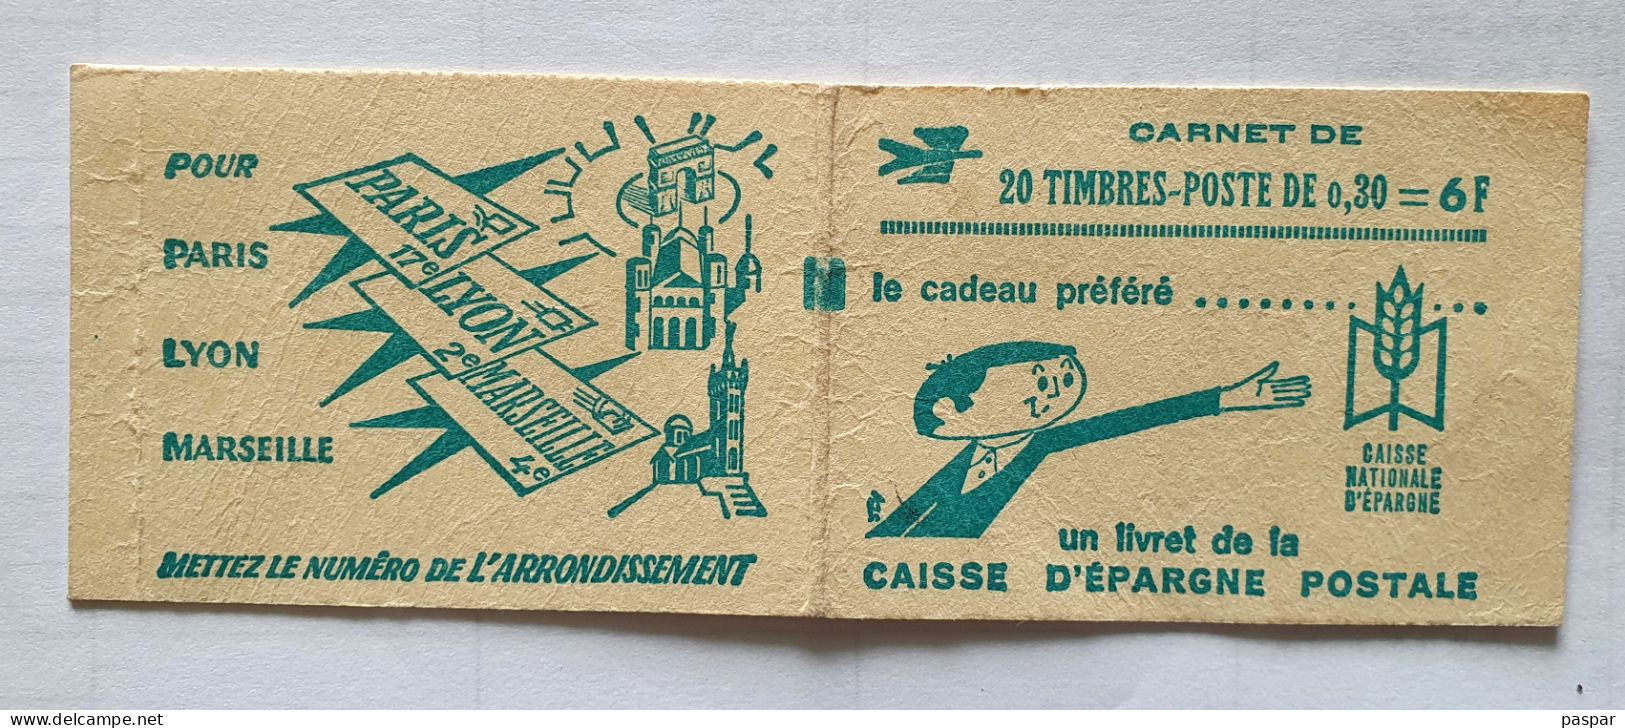 Ancien Carnet De Timbres Vide France Poste Caisse Nationale D'Epargne - Anciens : 1906-1965